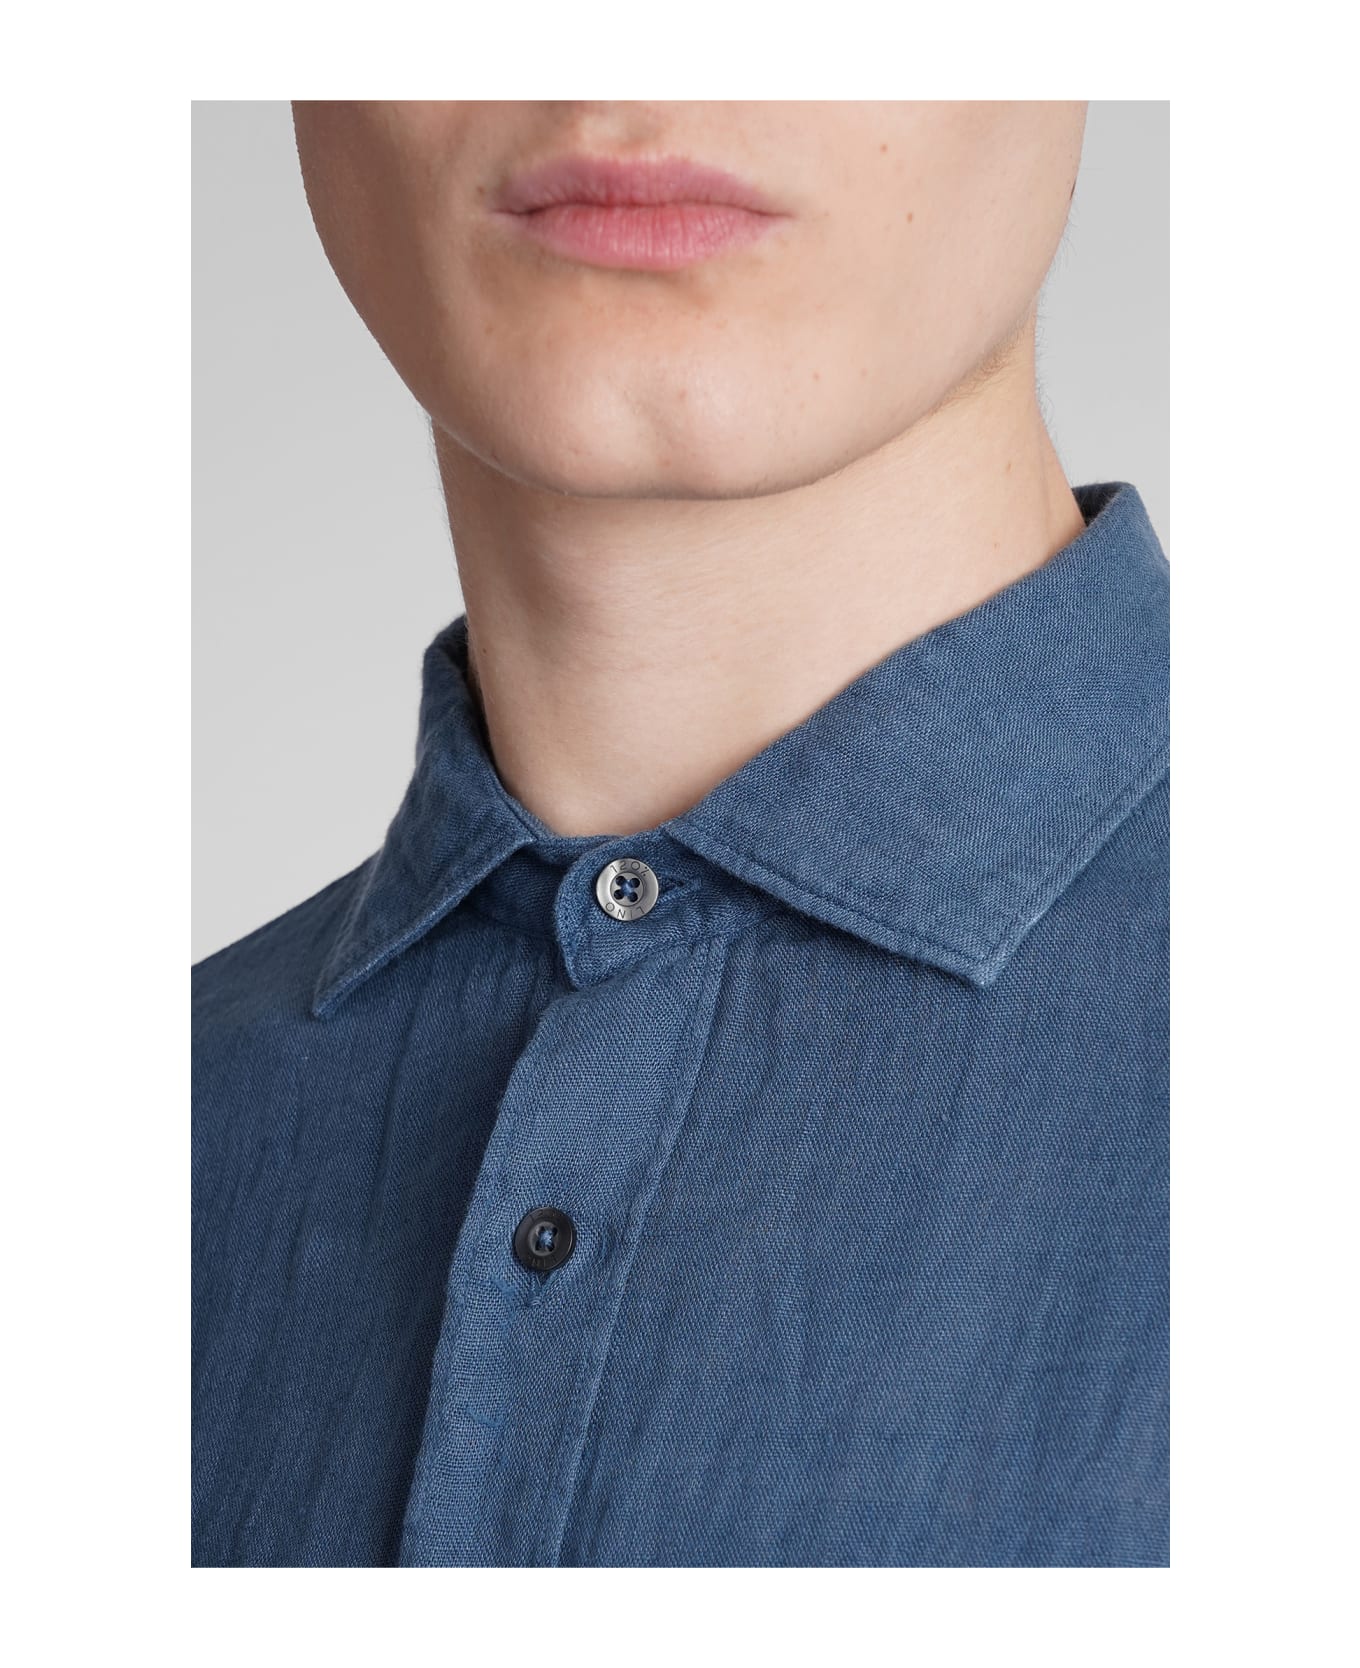 120% Lino Shirt In Blue Linen - blue